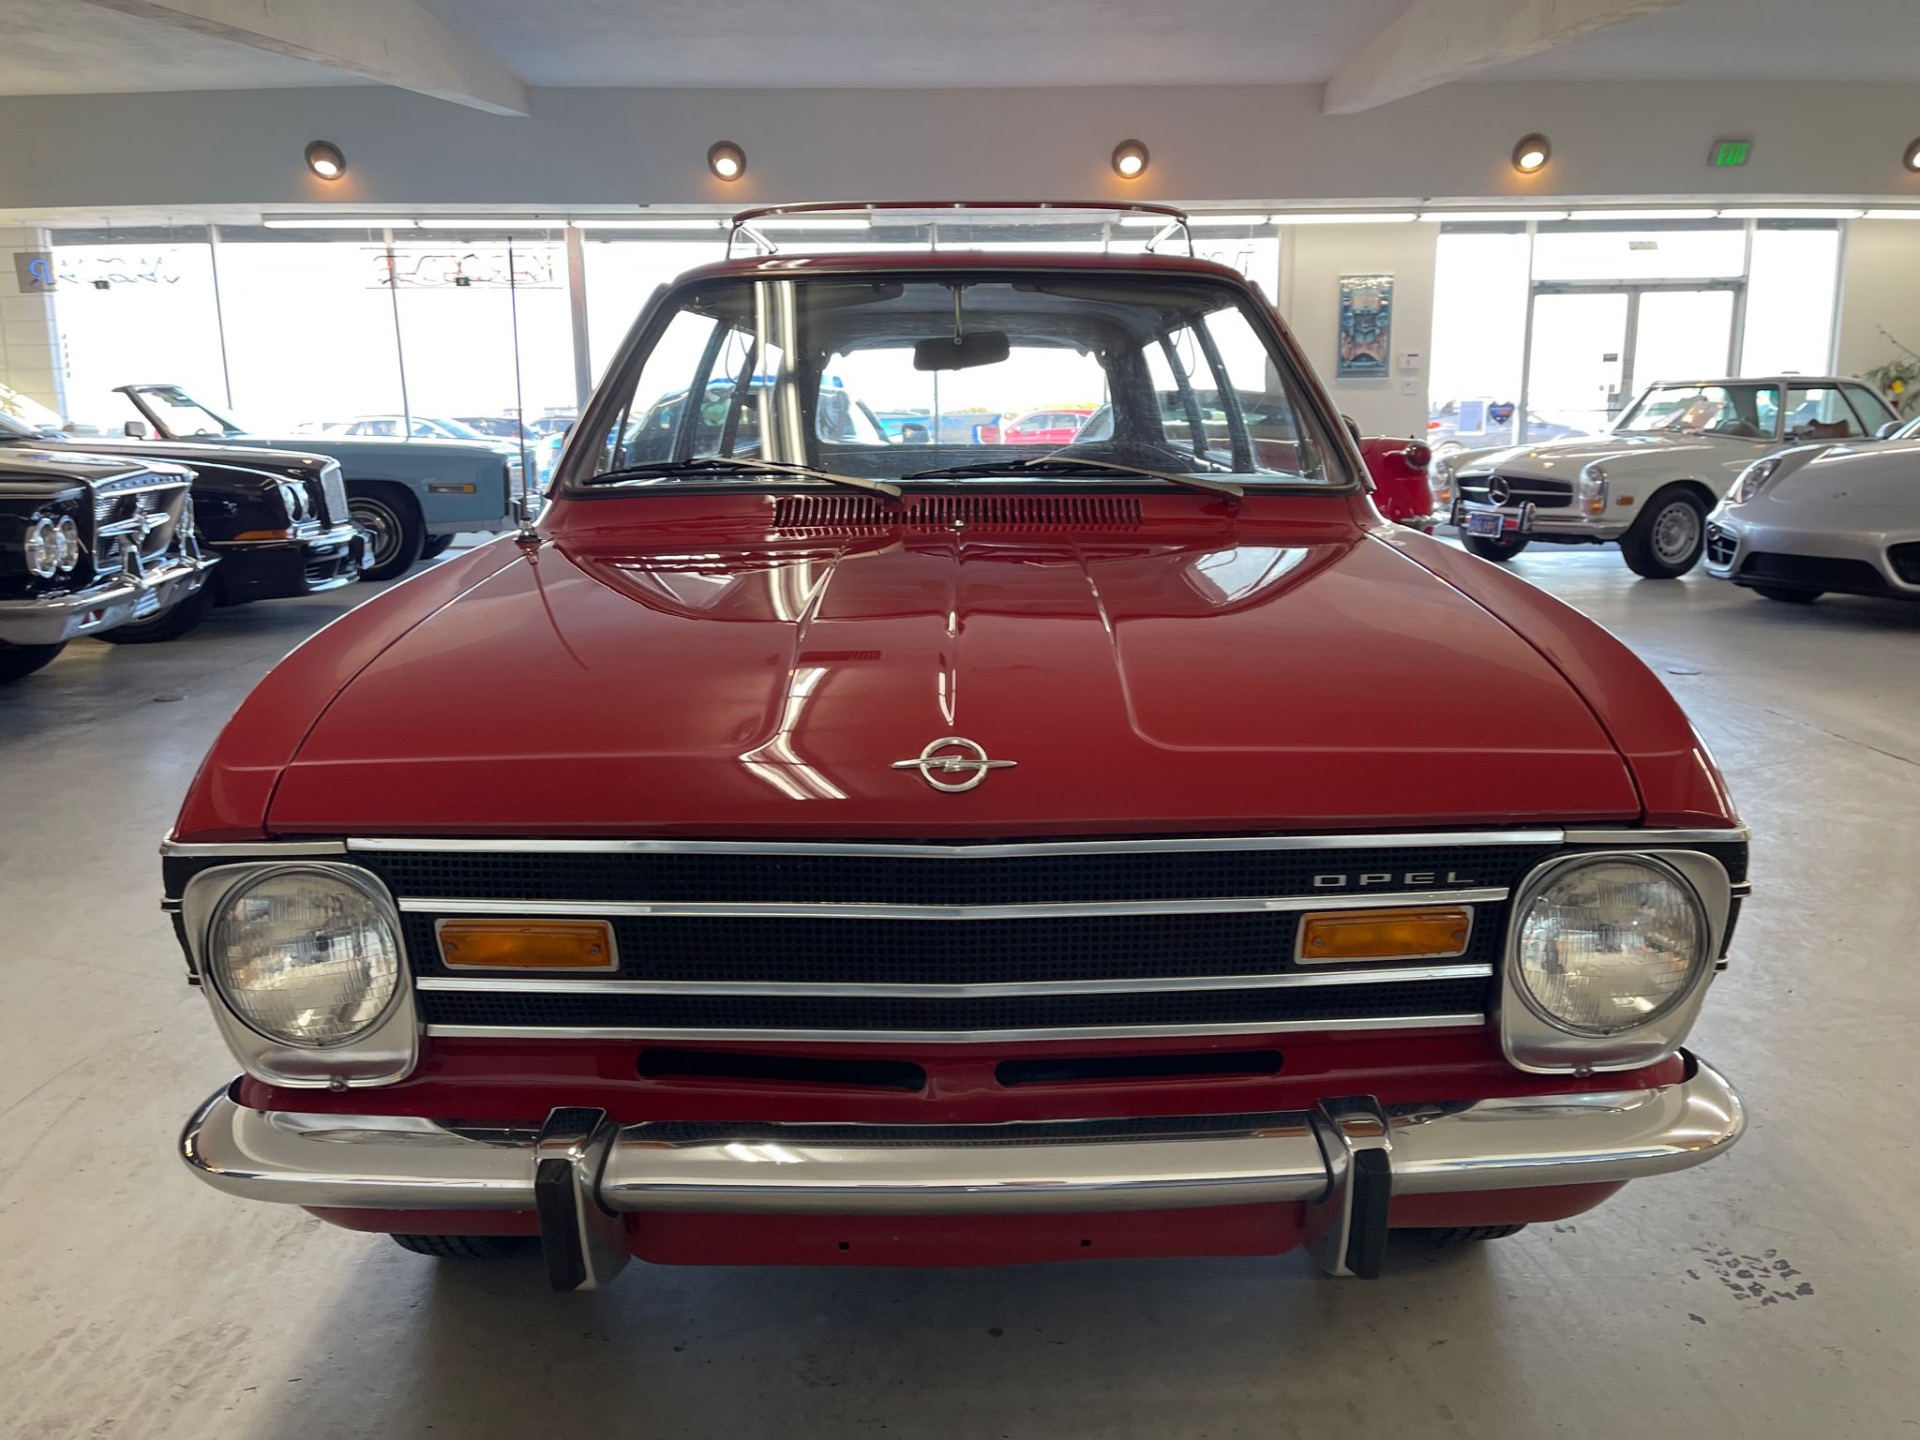 Used-1968-Opel-Kadett-B